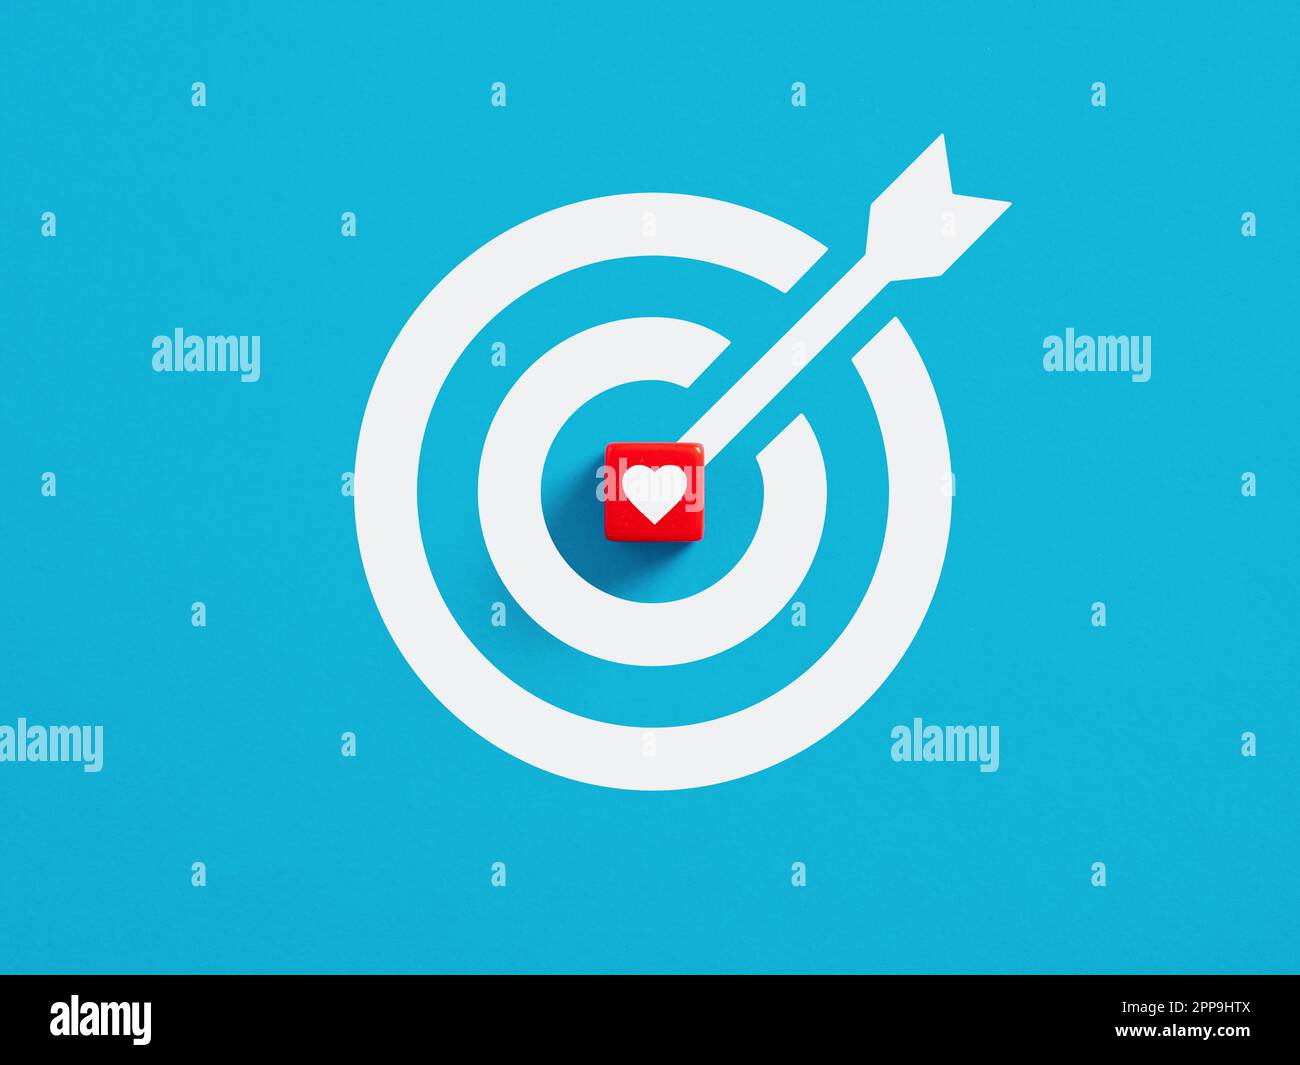 Ich liebe das Zielkonzept. Ziel ist es, Liebe, Glück und eine Beziehung zu finden. Roter Würfel mit Herzliebenssymbol in der Mitte eines Zielschilds. Stockfoto